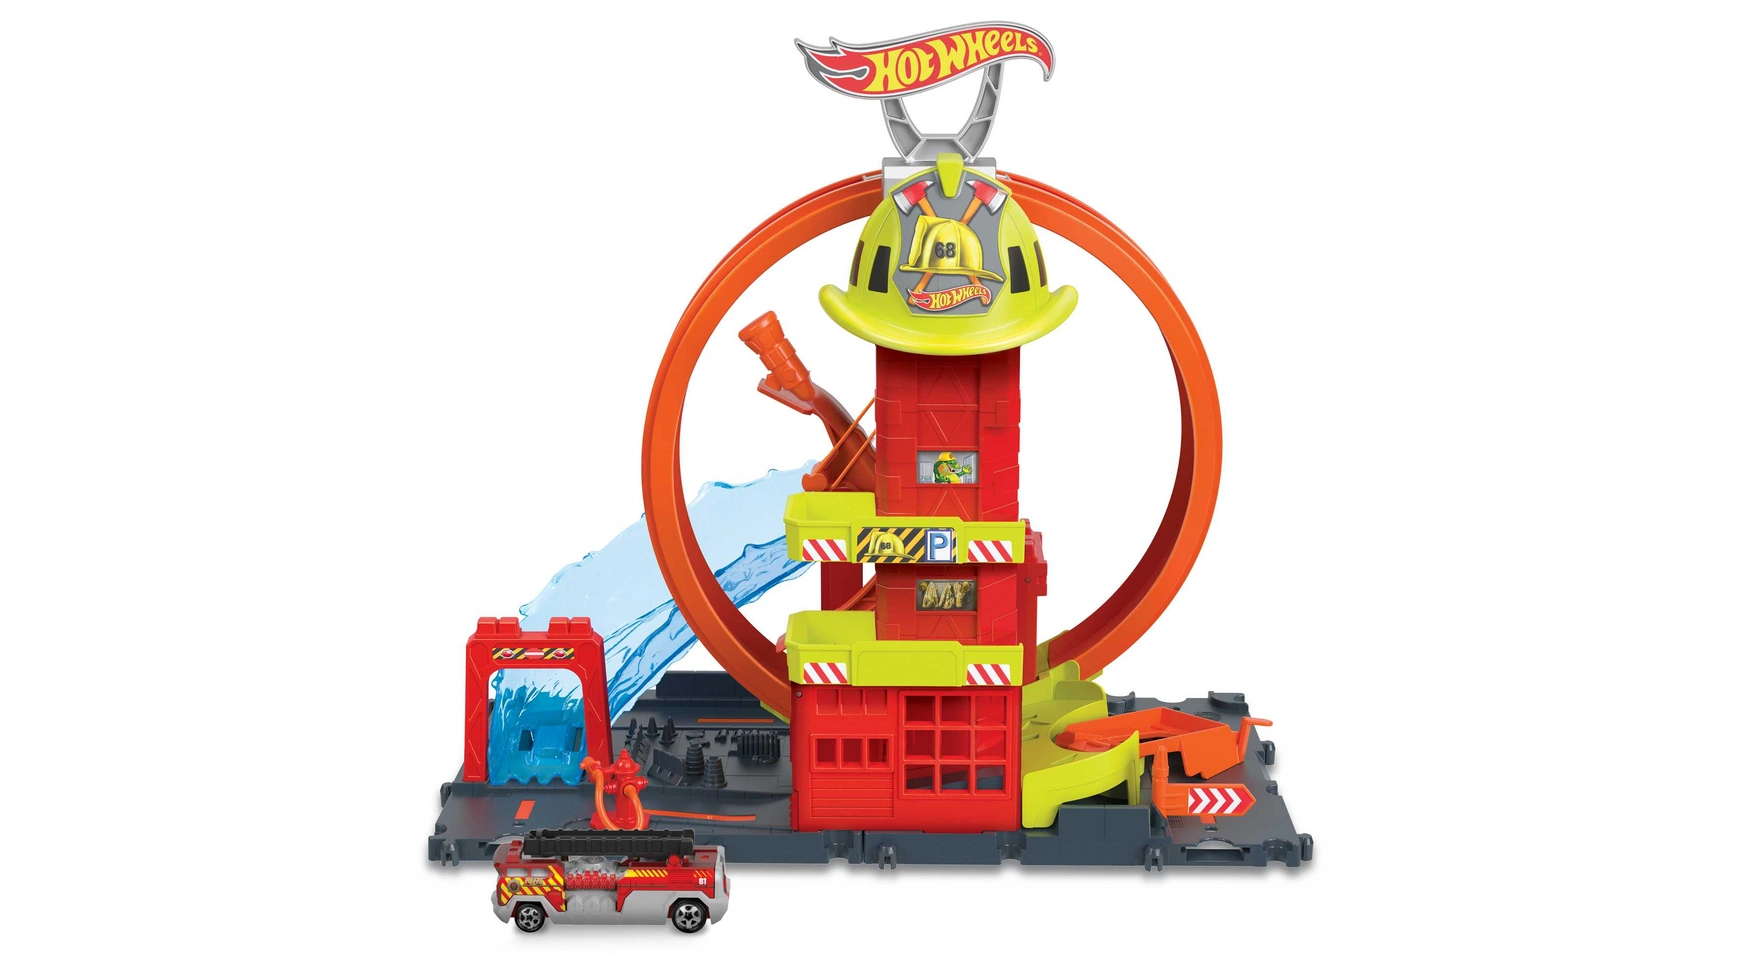 Hot wheels city super looping пожарная станция Mattel цена и фото